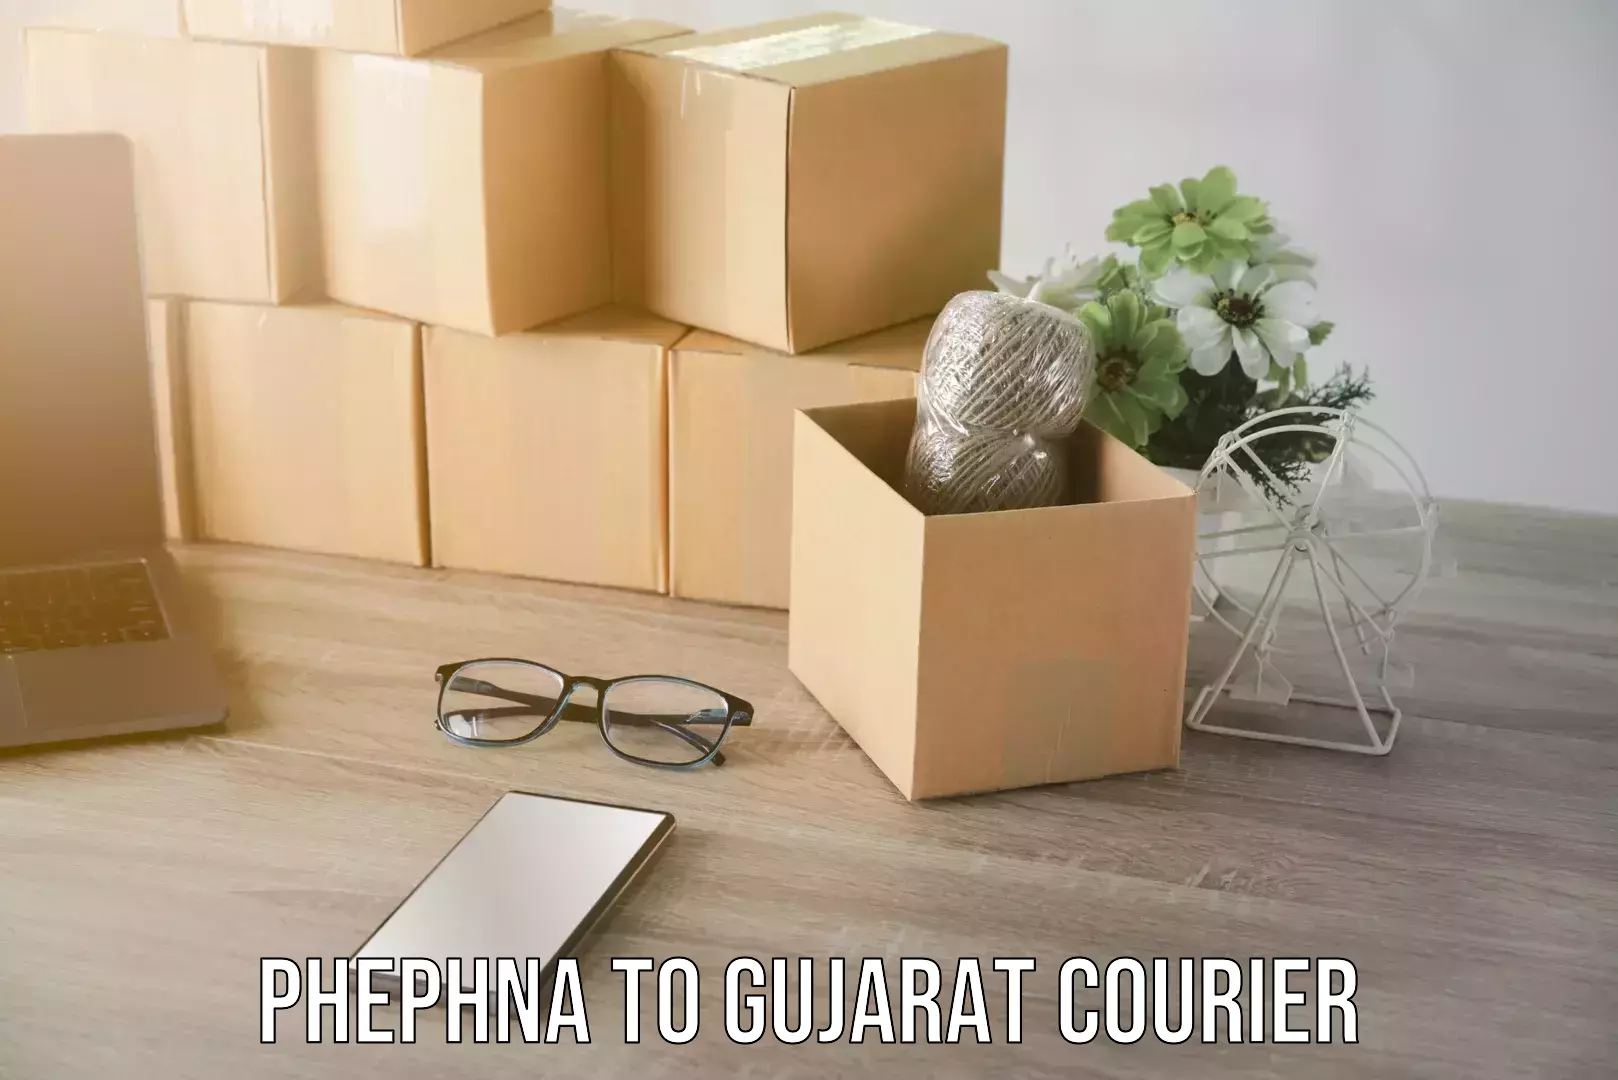 Efficient home relocation Phephna to Gujarat